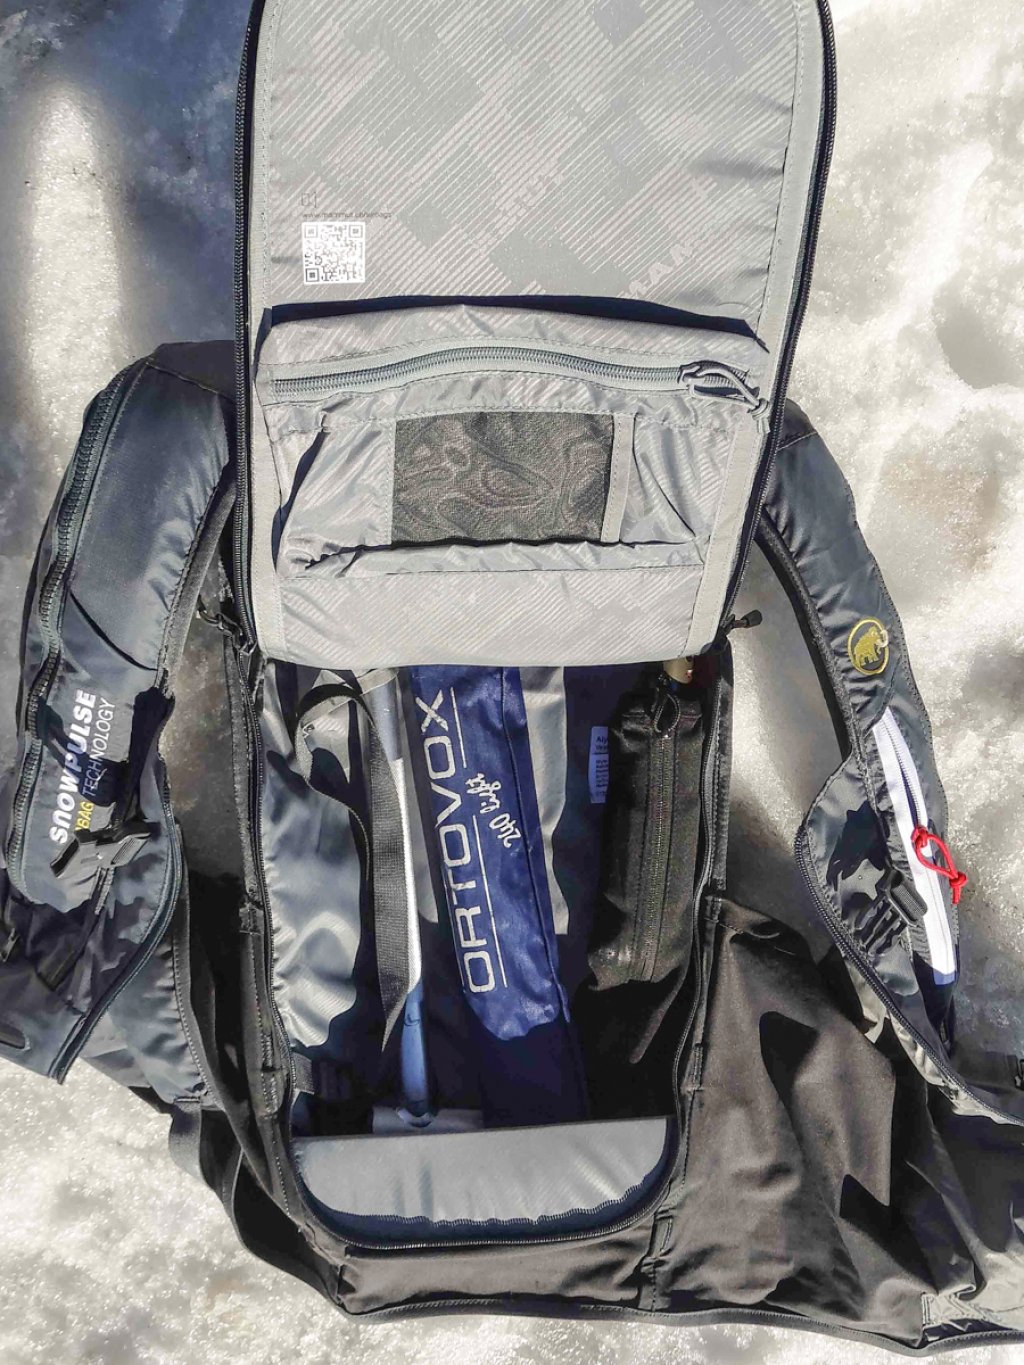 Mammut Alyeska Protection Airbag Vest - Hauptfach mit nur Sicherheitsausrüstung